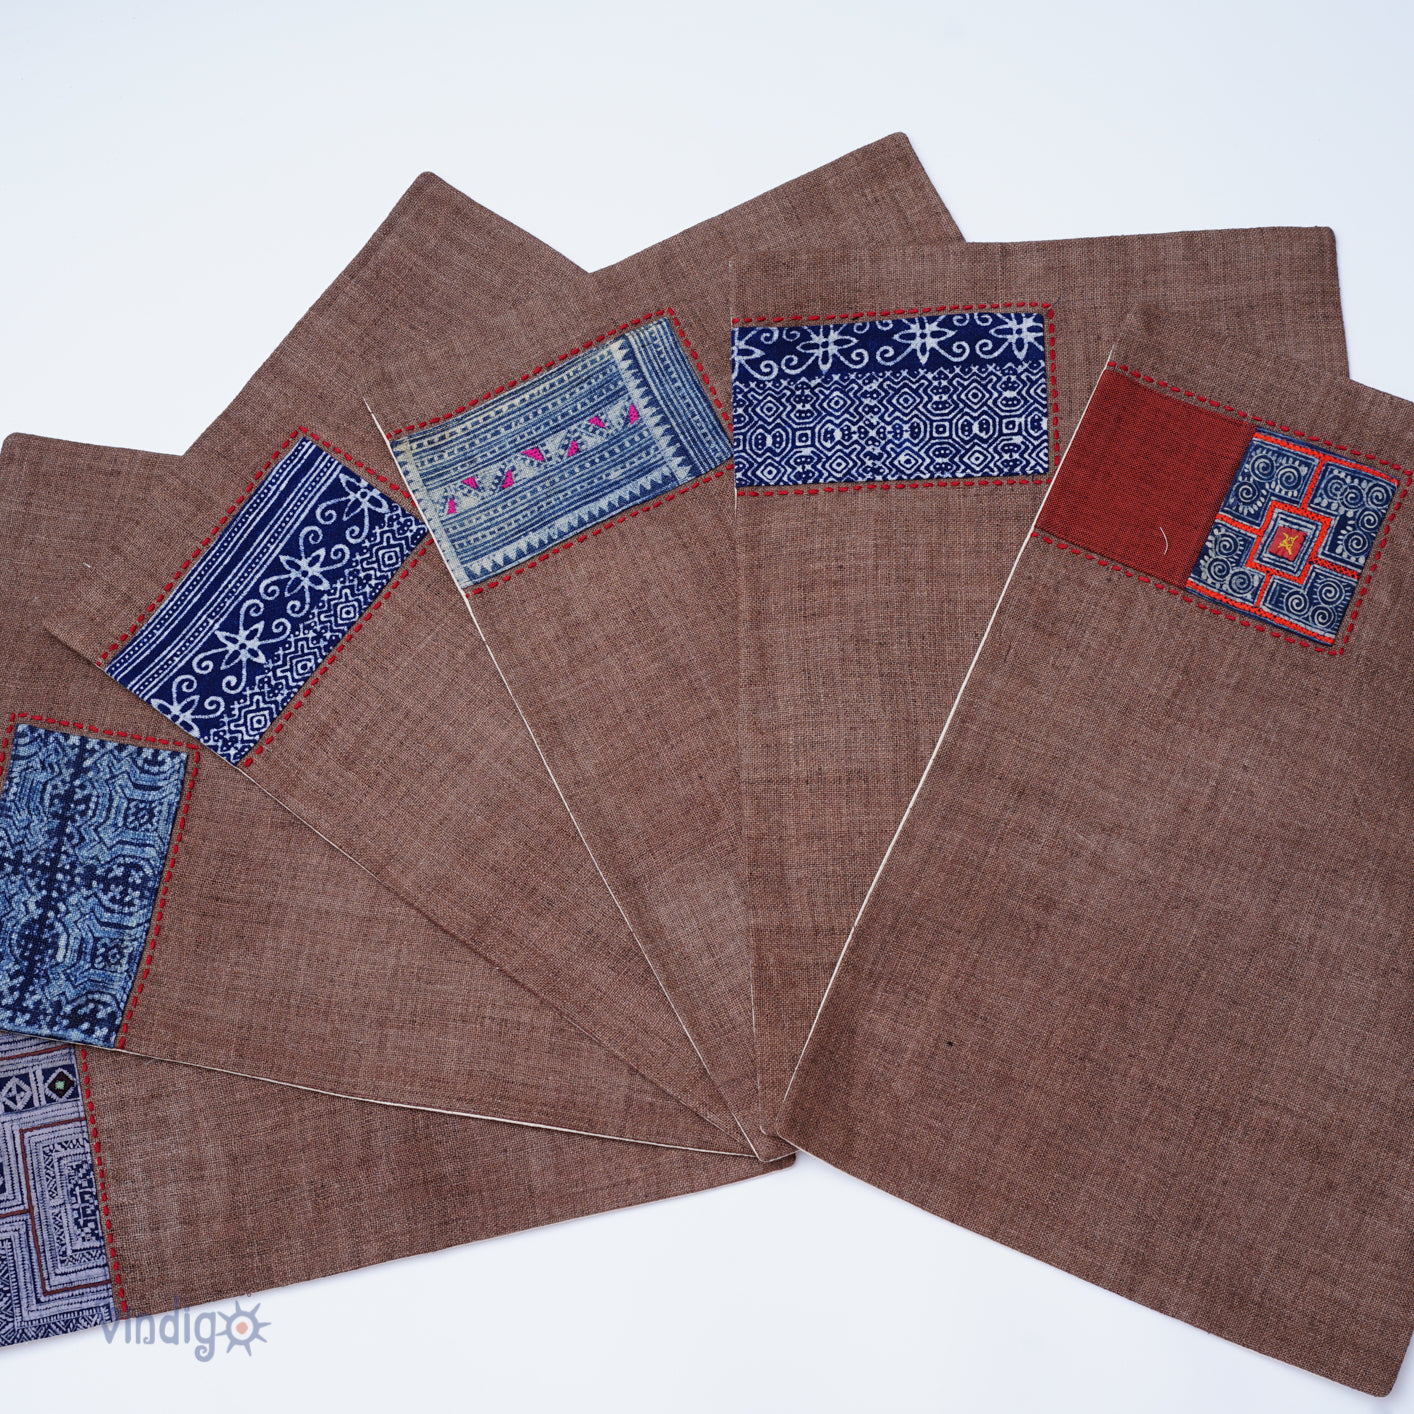 Dark brown hemp placemat, hand-embroidered patch, hand stitches